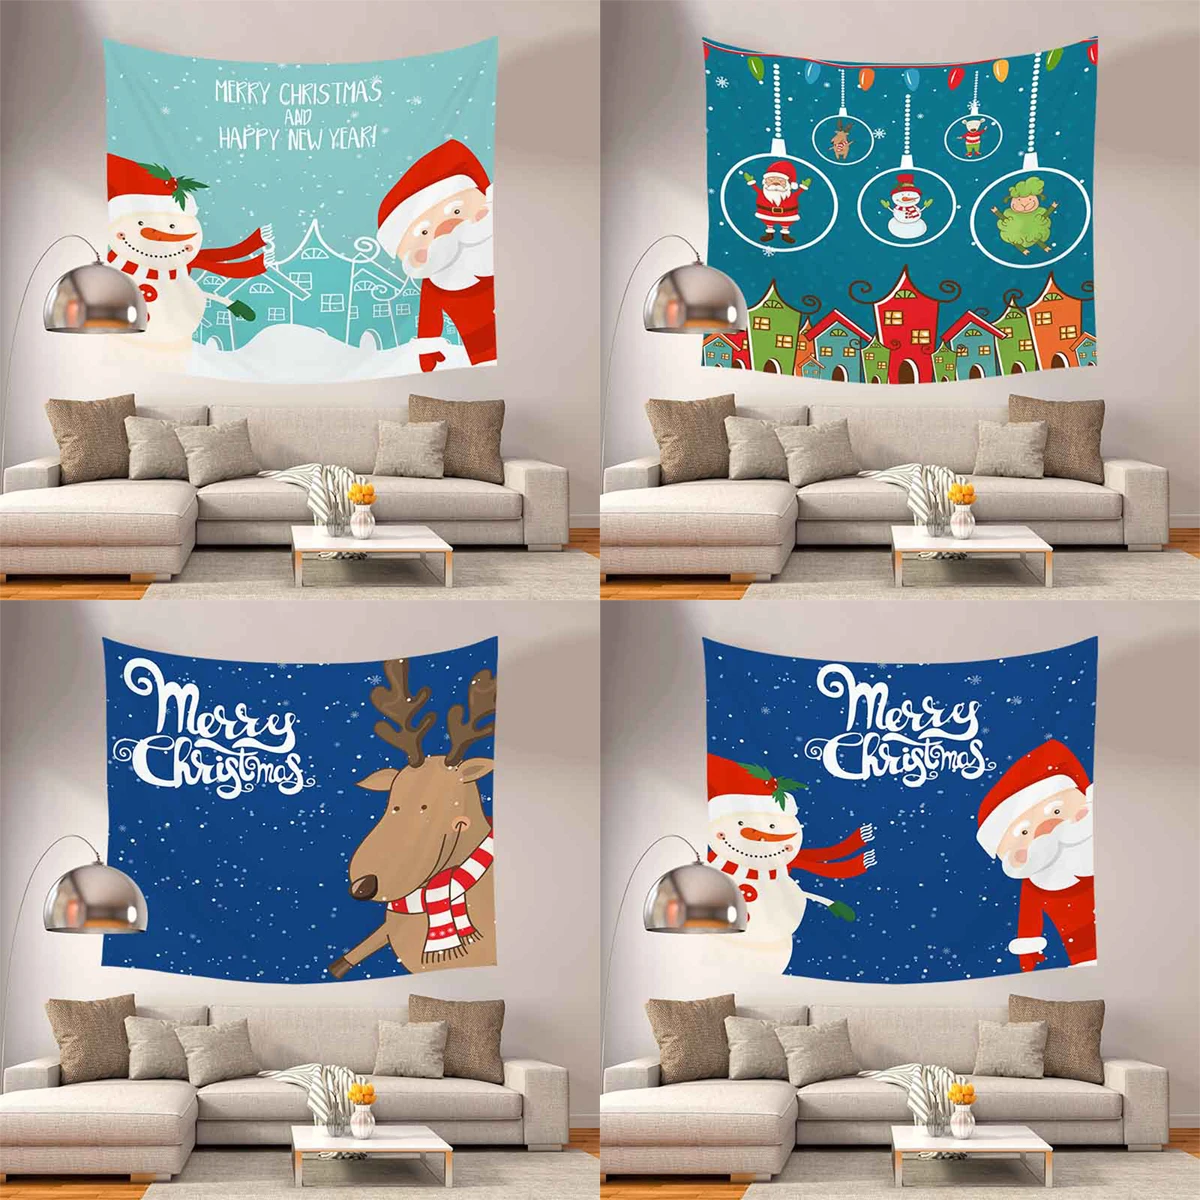 

ZHENHE, гобелен с рисунком Санта-Клауса, лисы, домашний декор, настенные гобелены, покрывало в стиле бохо, коврик для йоги, одеяло